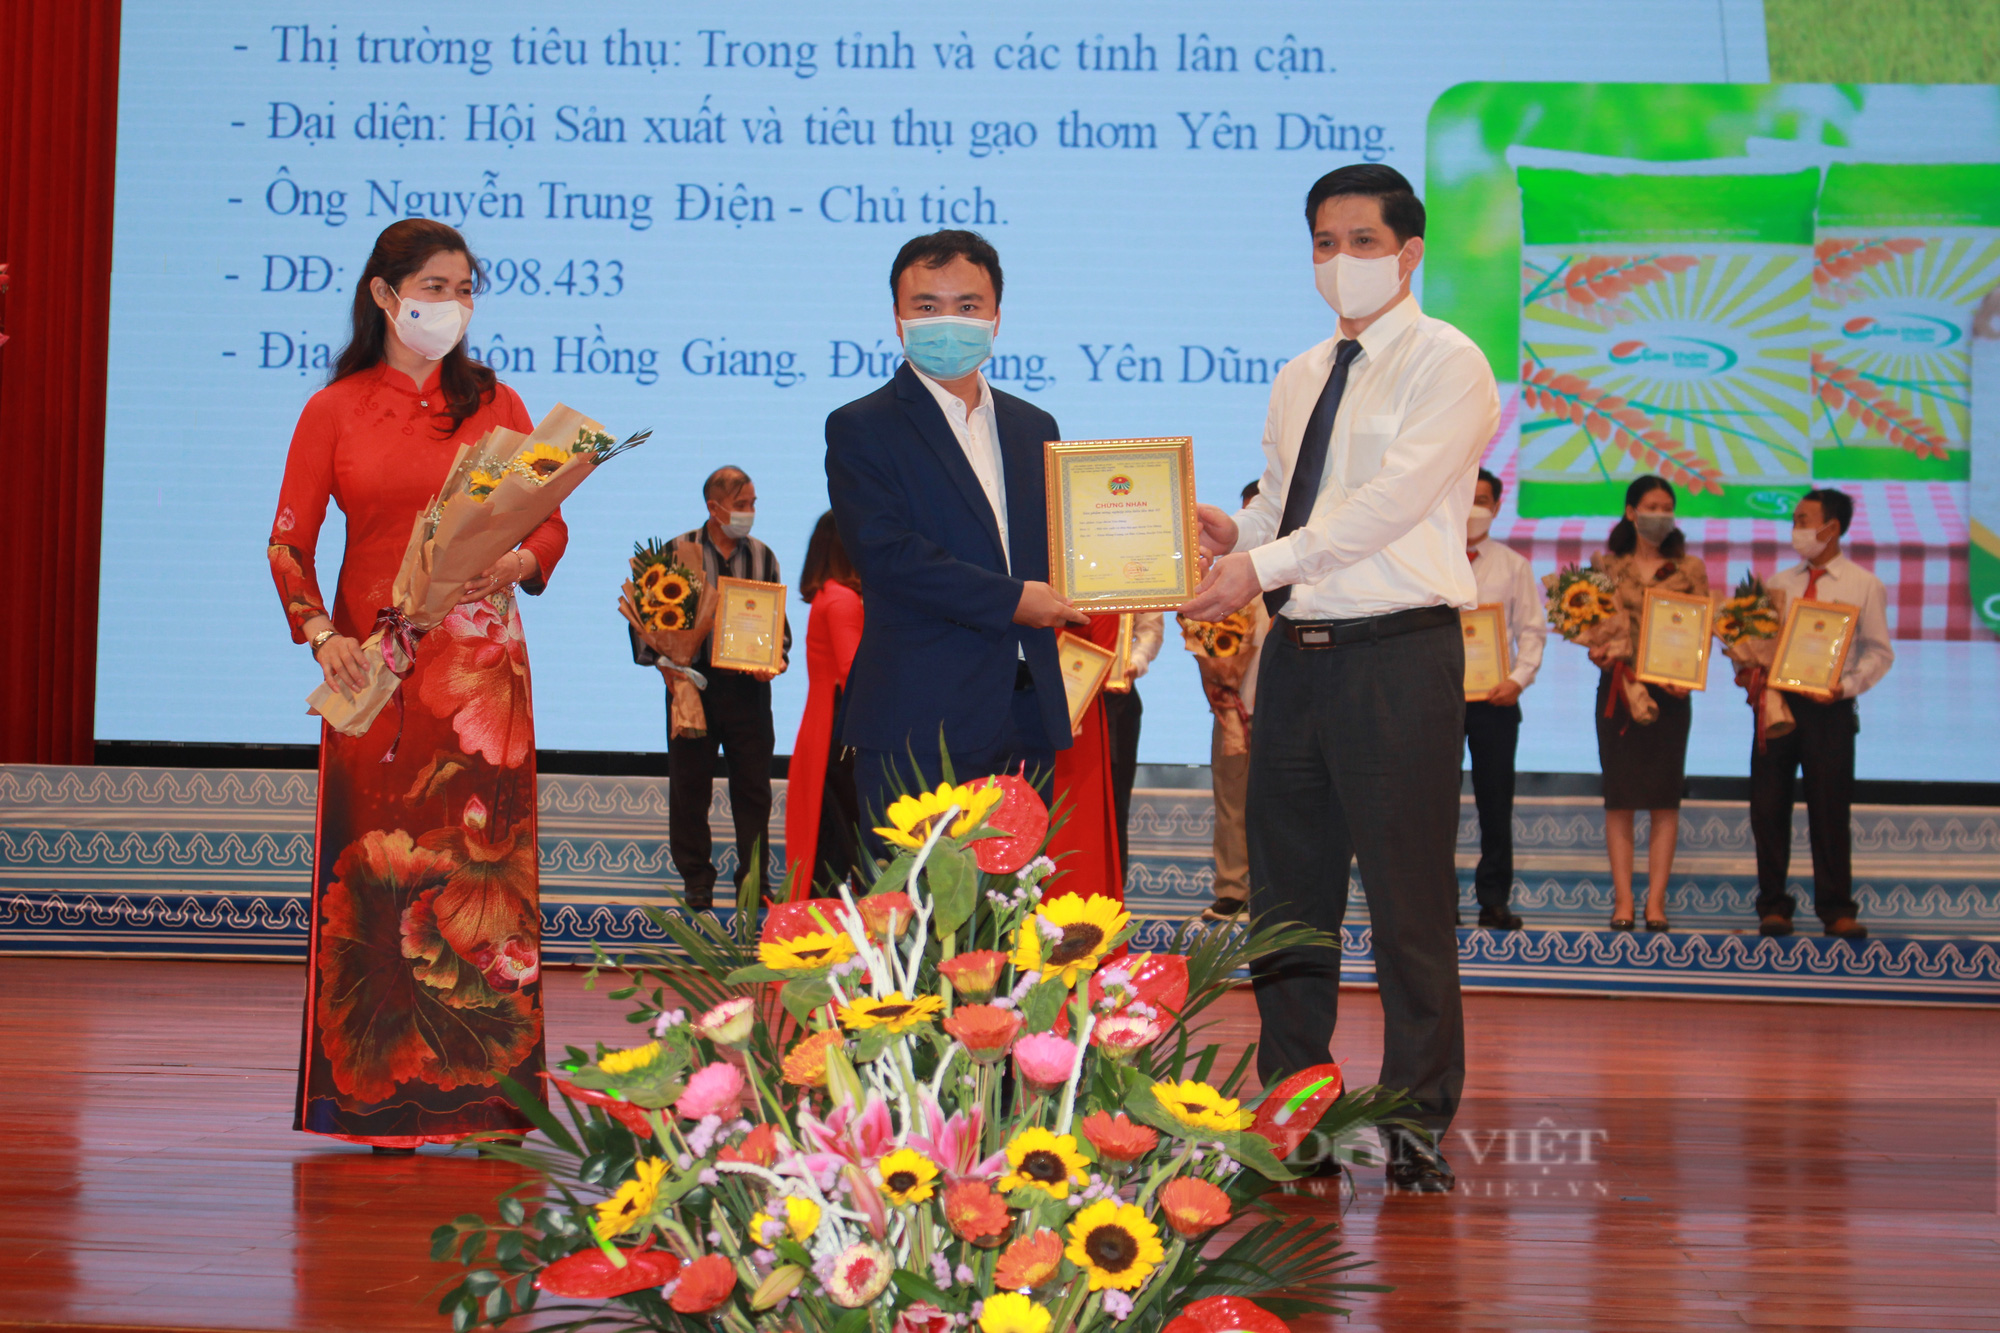 CLIP: Phó Chủ tịch T.Ư Hội NDVN Phạm Tiến Nam tham dự Hội nghị tổng kết sản xuất, kinh doanh giỏi tỉnh Bắc Giang - Ảnh 3.